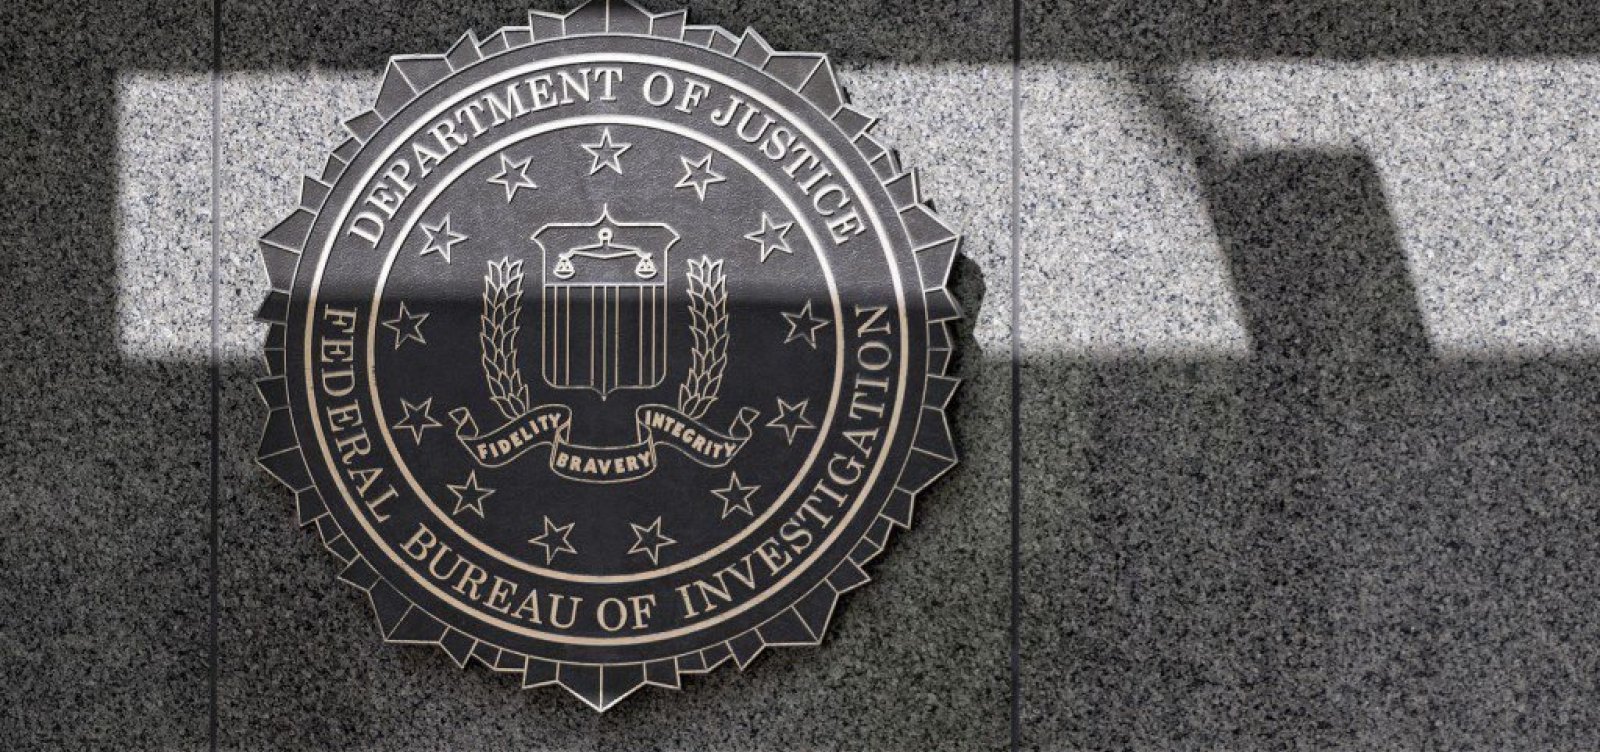 Homem com fuzil e colete à prova de balas tenta invadir prédio do FBI nos EUA